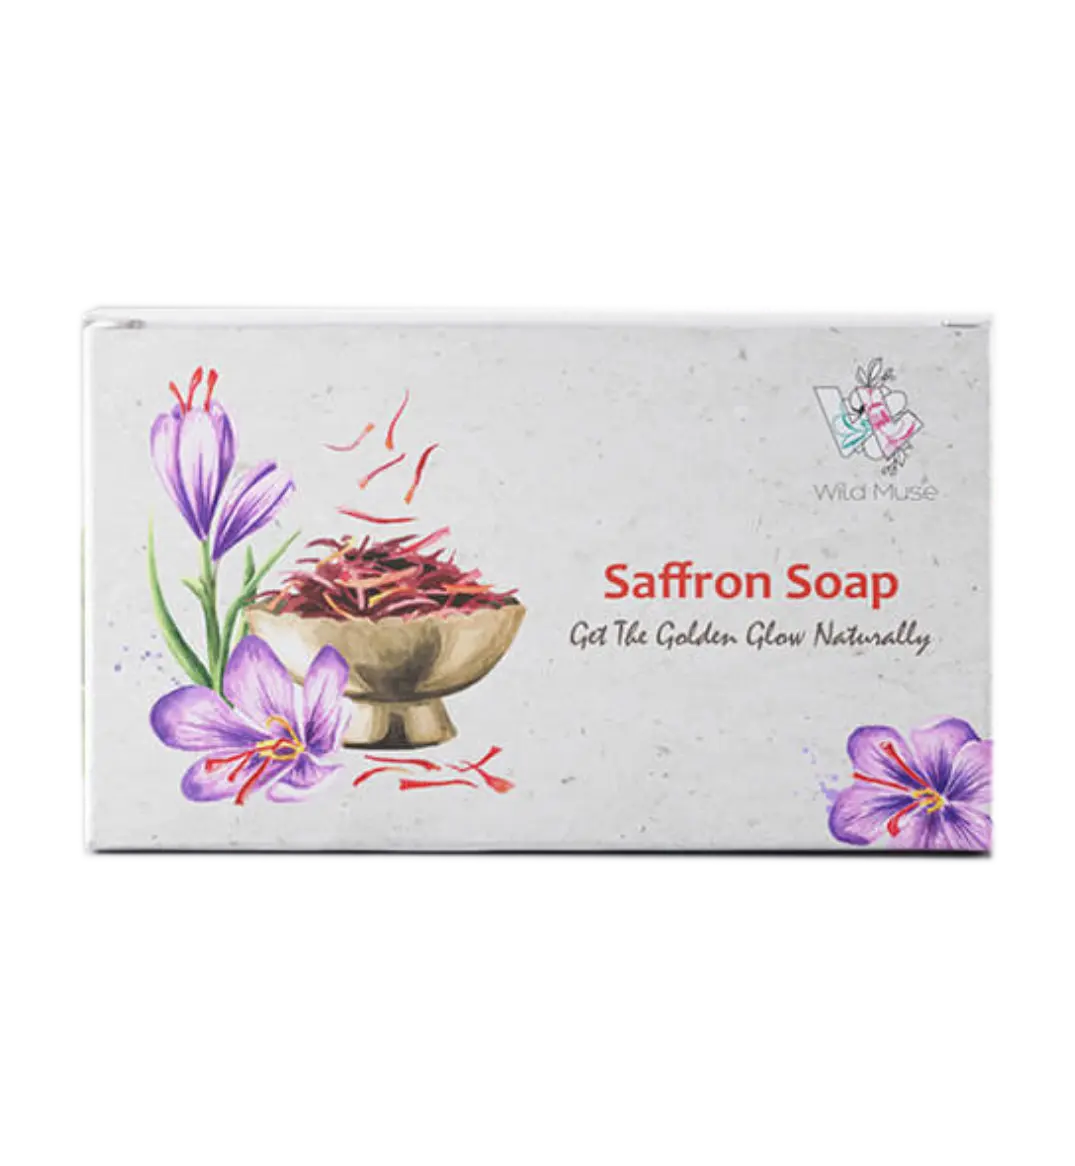 Luxury Saffron Soap- best soap for glowing skin